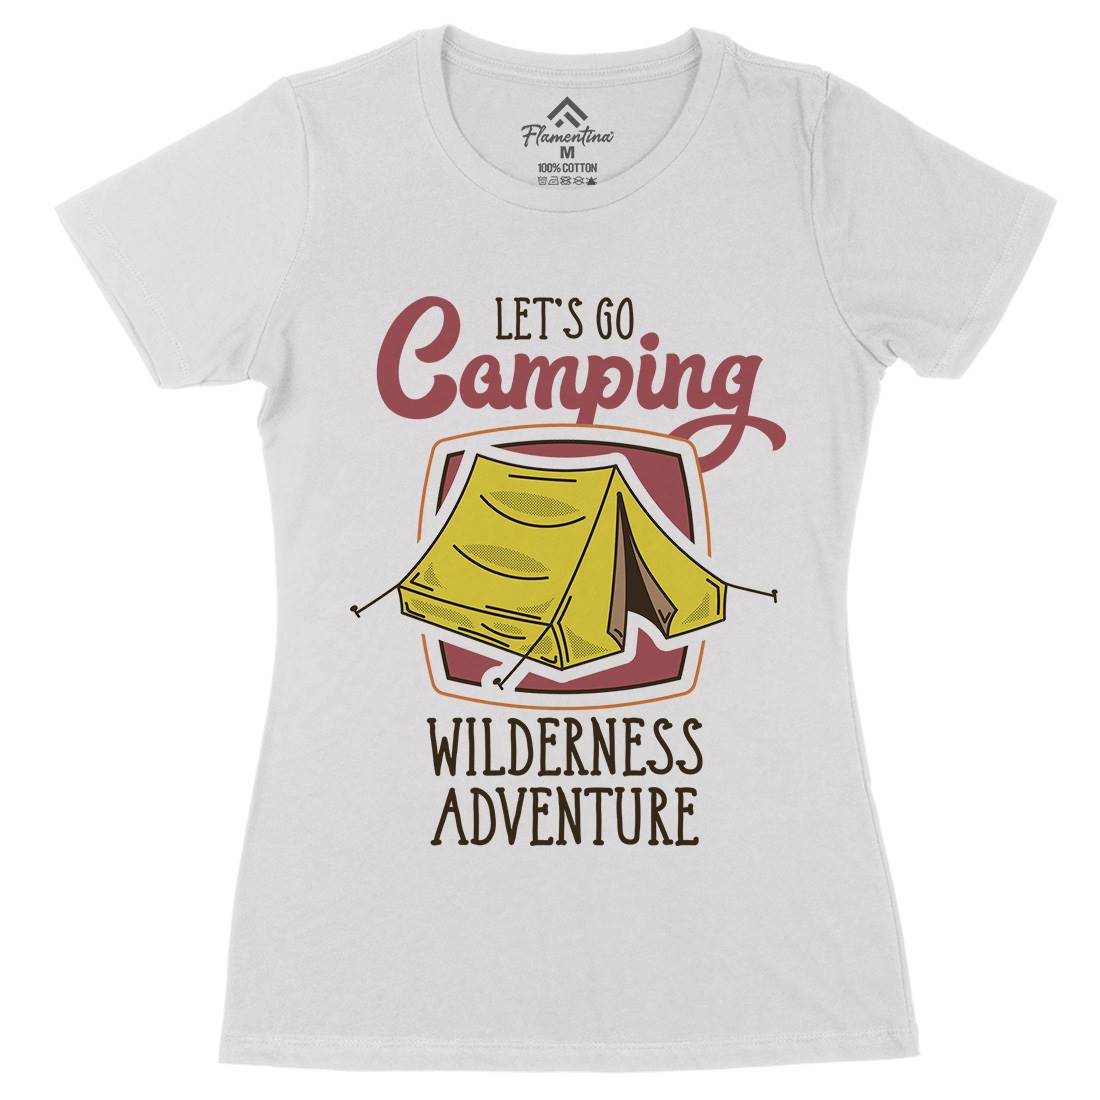 Wilderness Adventure Womens Organic Crew Neck T-Shirt Nature D998